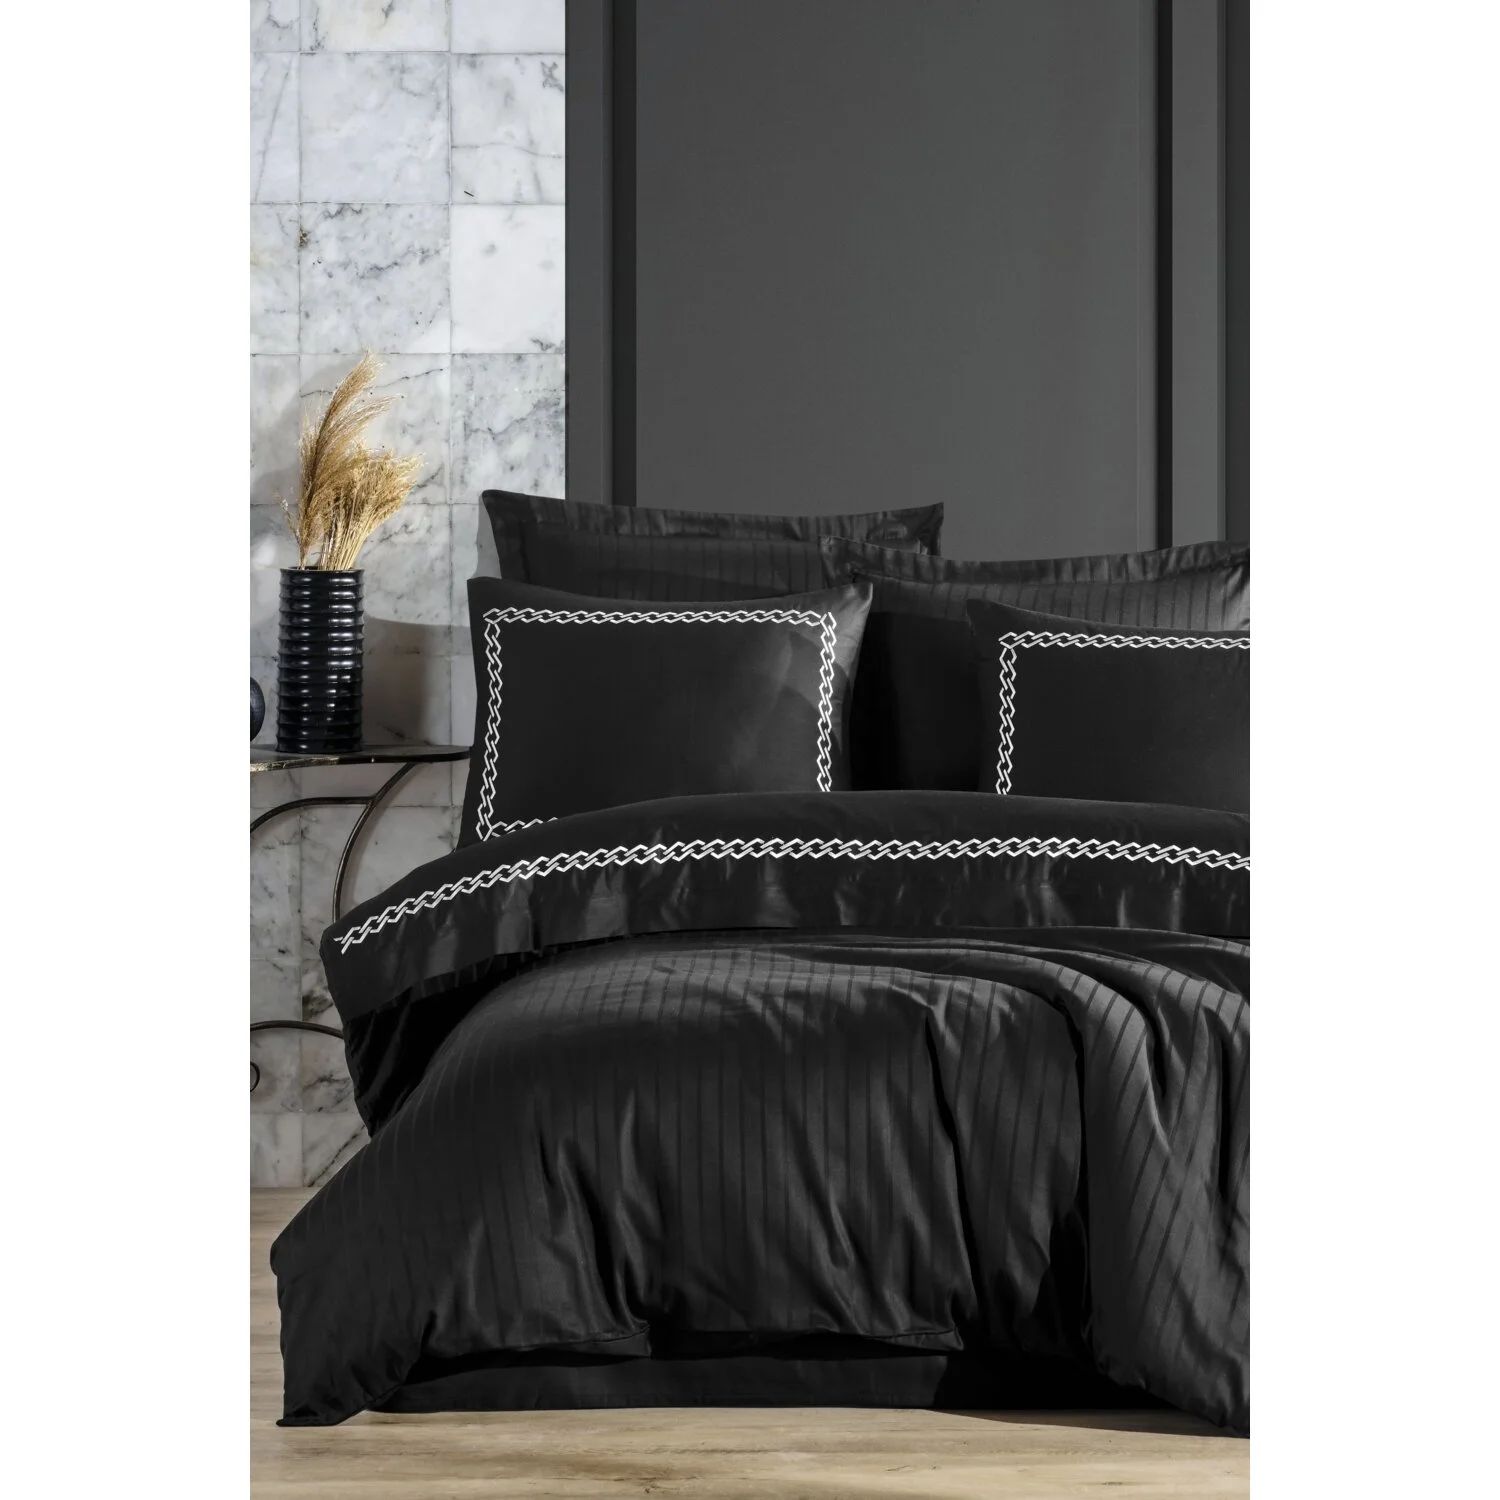 Комплект постельного белья из кружевного хлопкового атласа с вышивкой - Nuans evic siyah örgülü babet ayakkabı